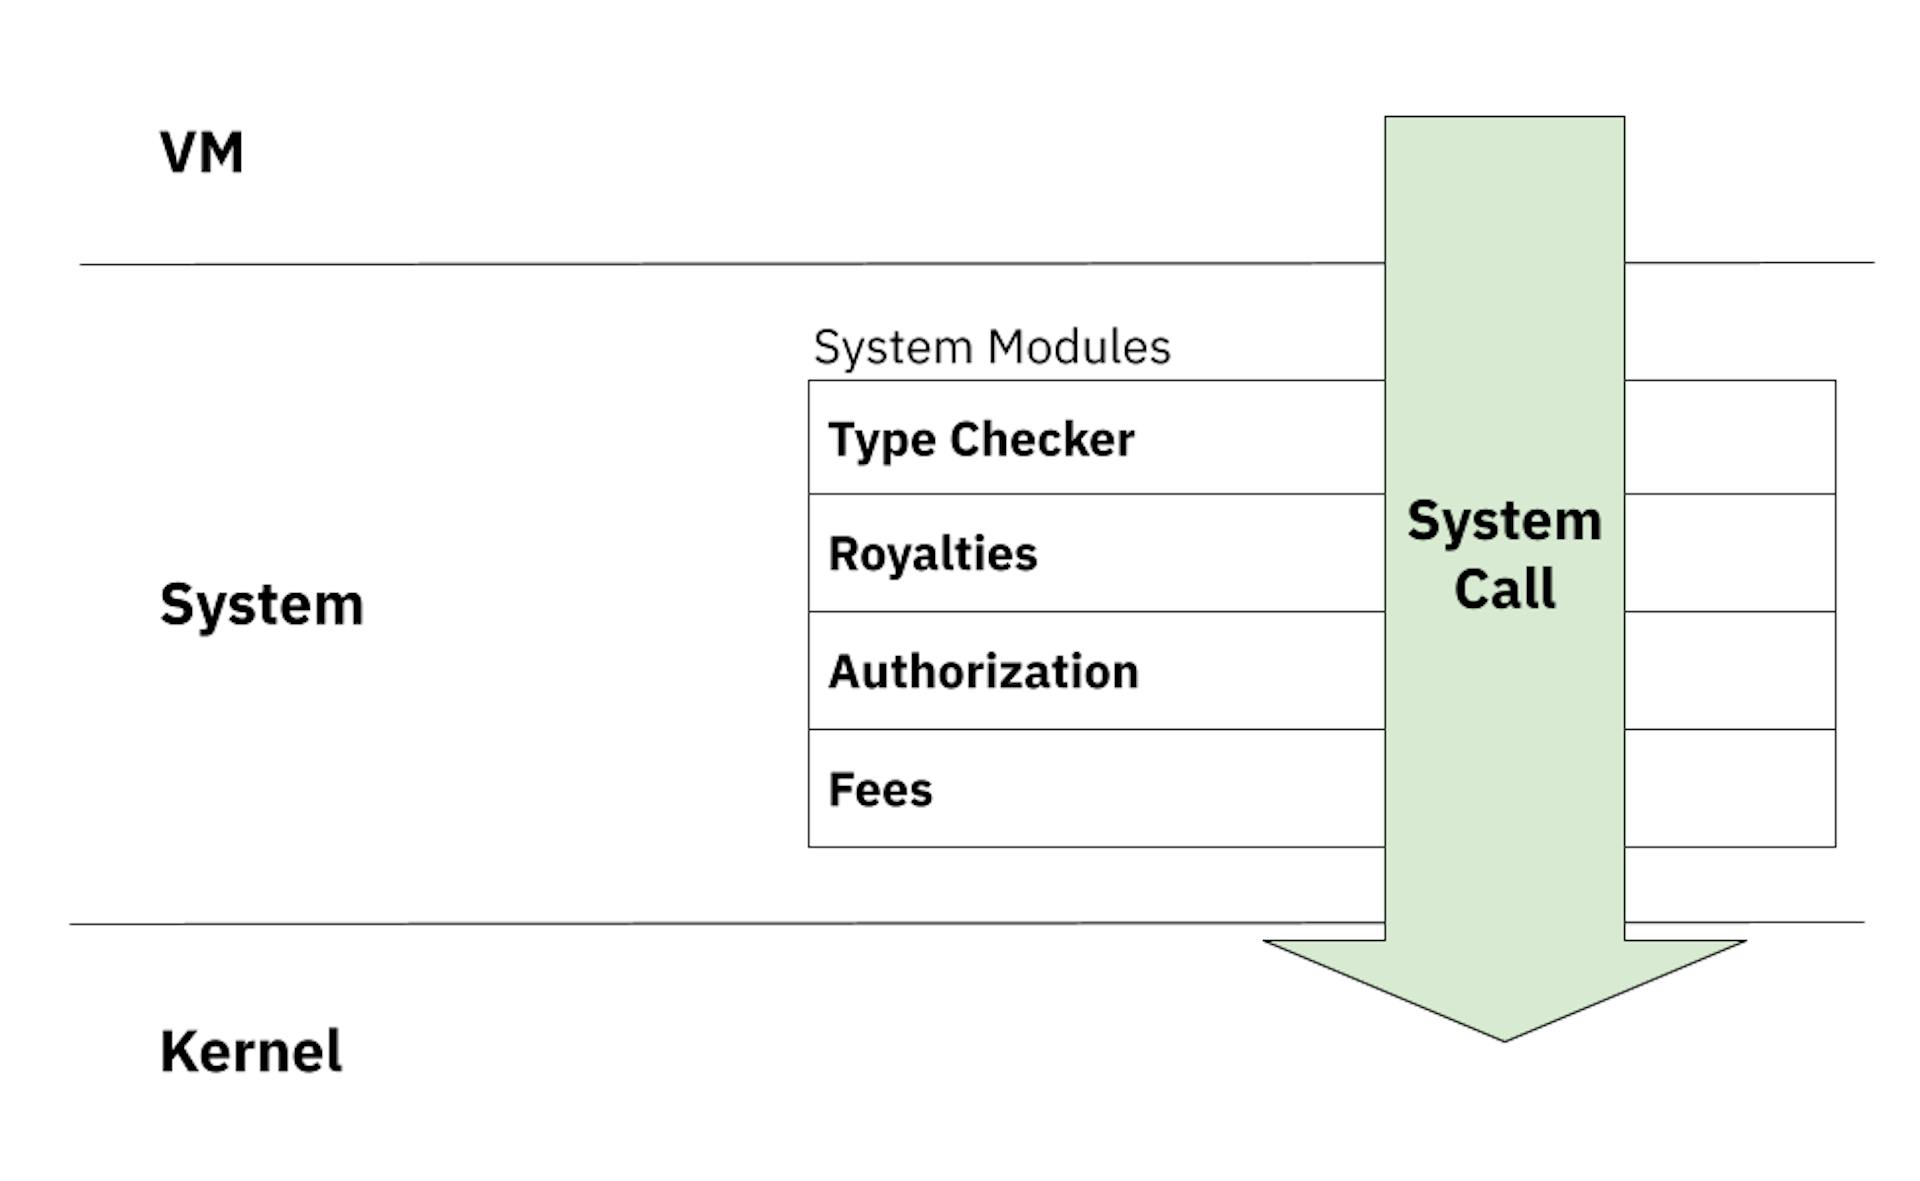 Uma Chamada de Sistema deve passar pelos filtros de vários módulos do sistema antes de ser passada para o kernel.